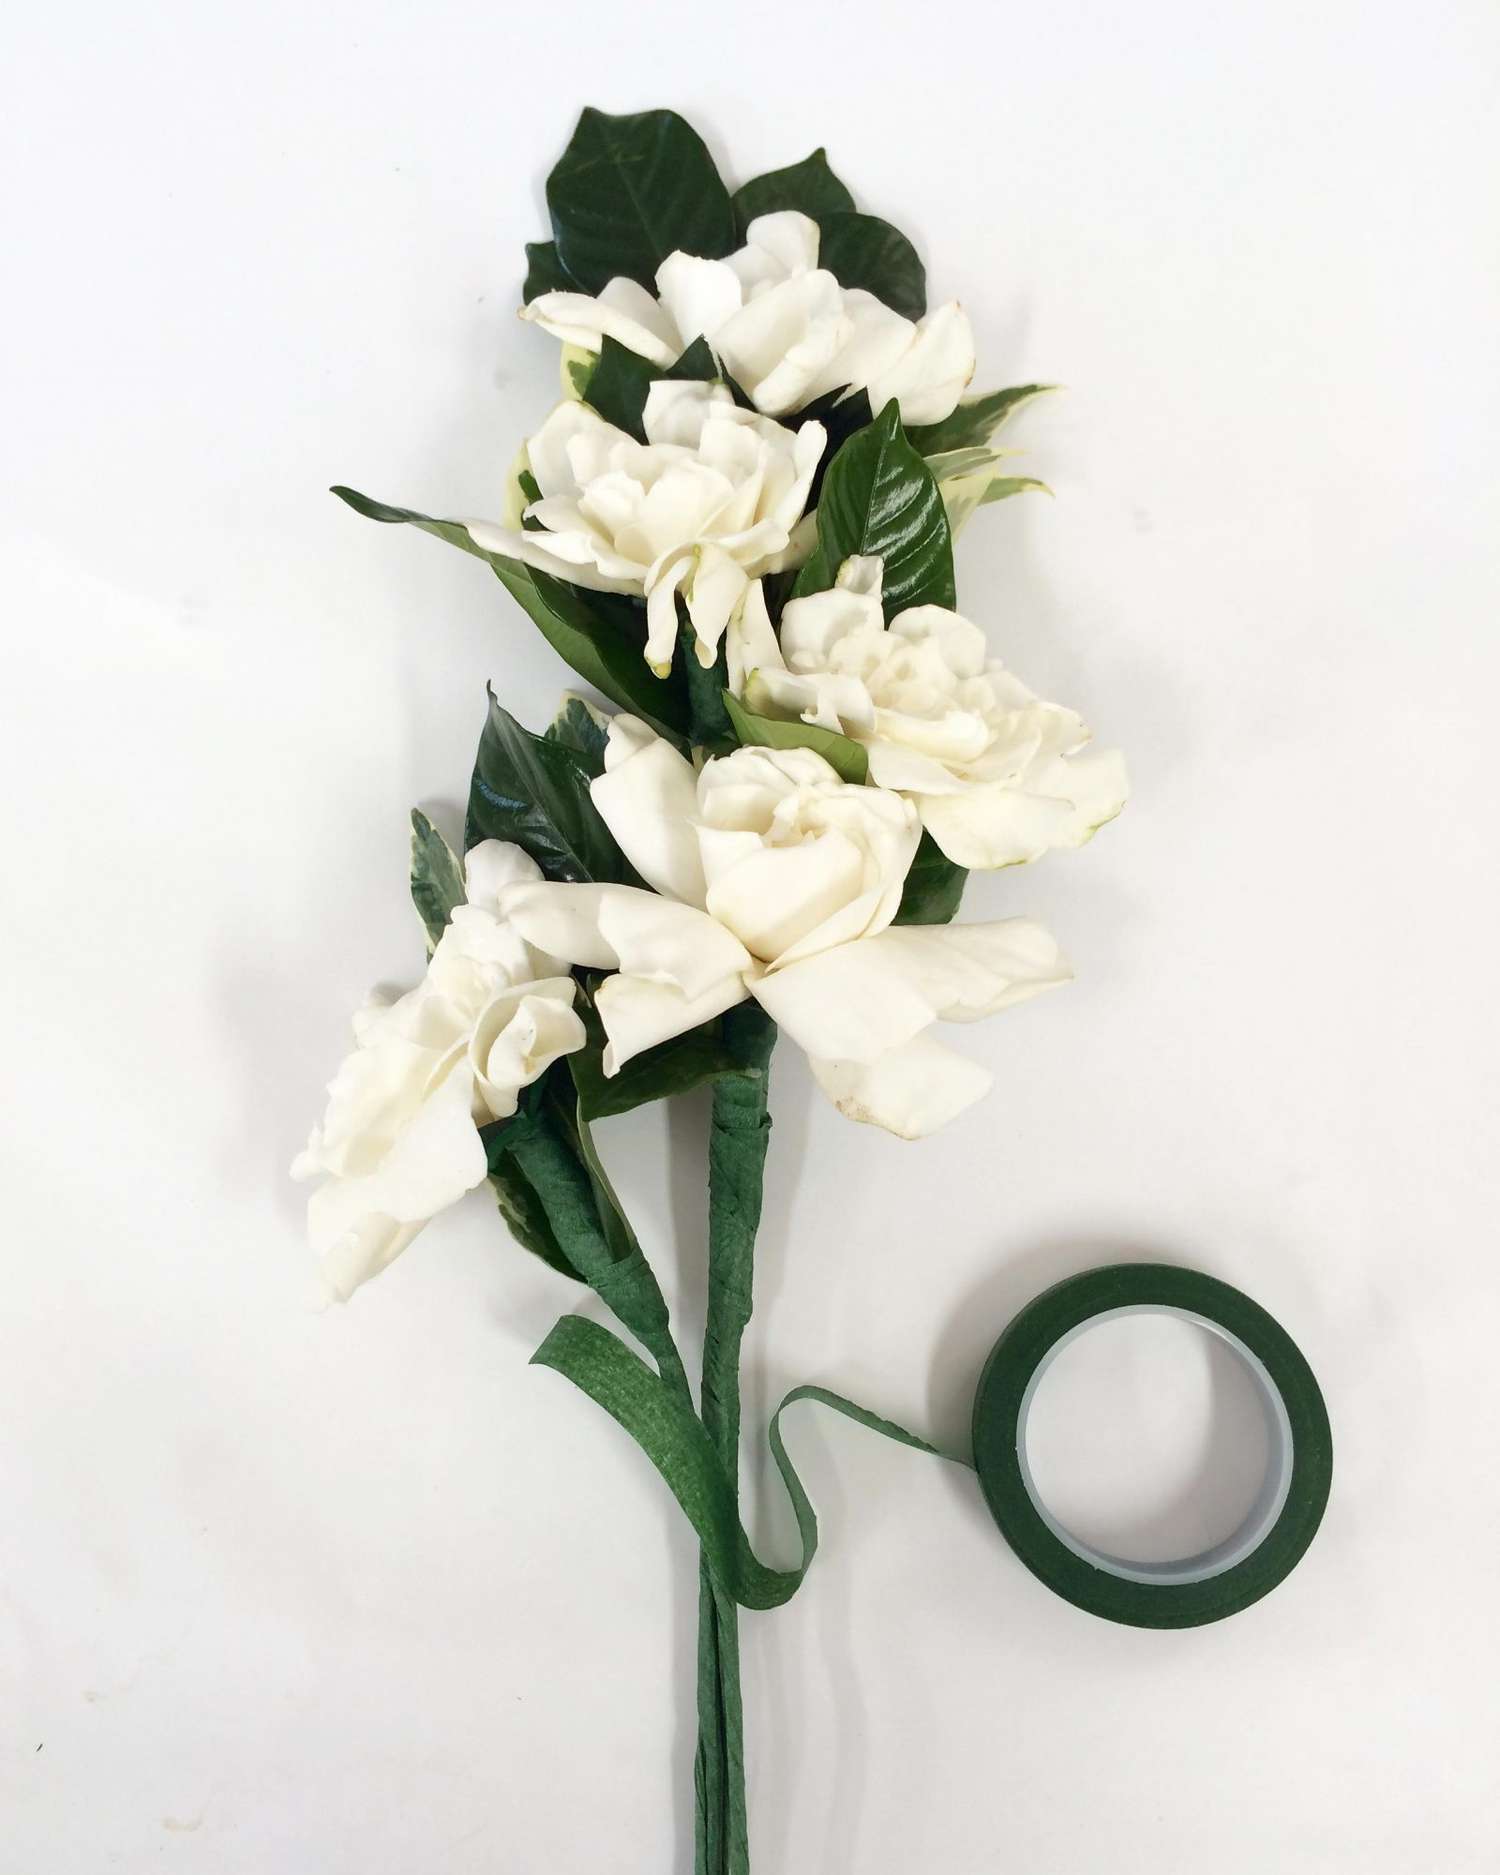 ron-wendt-cascading-bouquet-gardenias-7-0616.jpg